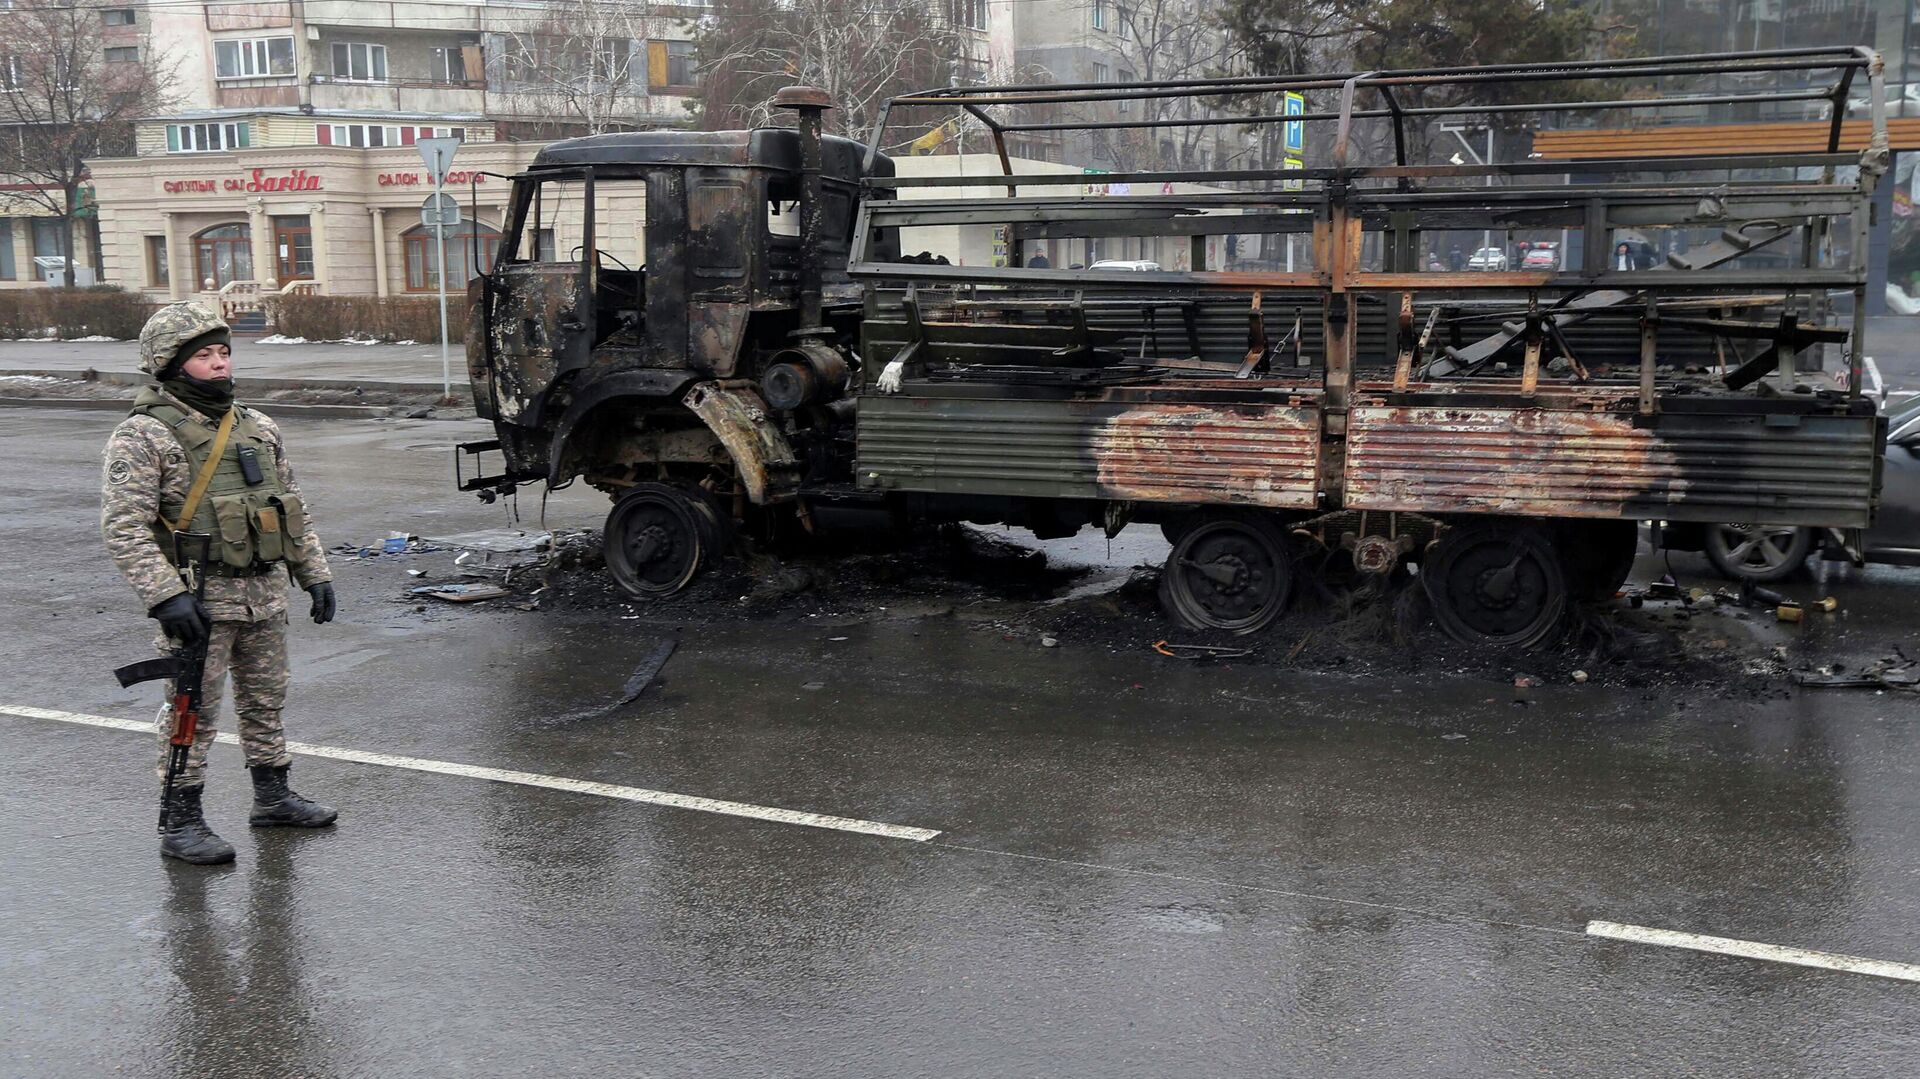 Военный возле сгоревшего грузовика на одной из улиц в Алма-Ате - РИА Новости, 1920, 08.01.2022